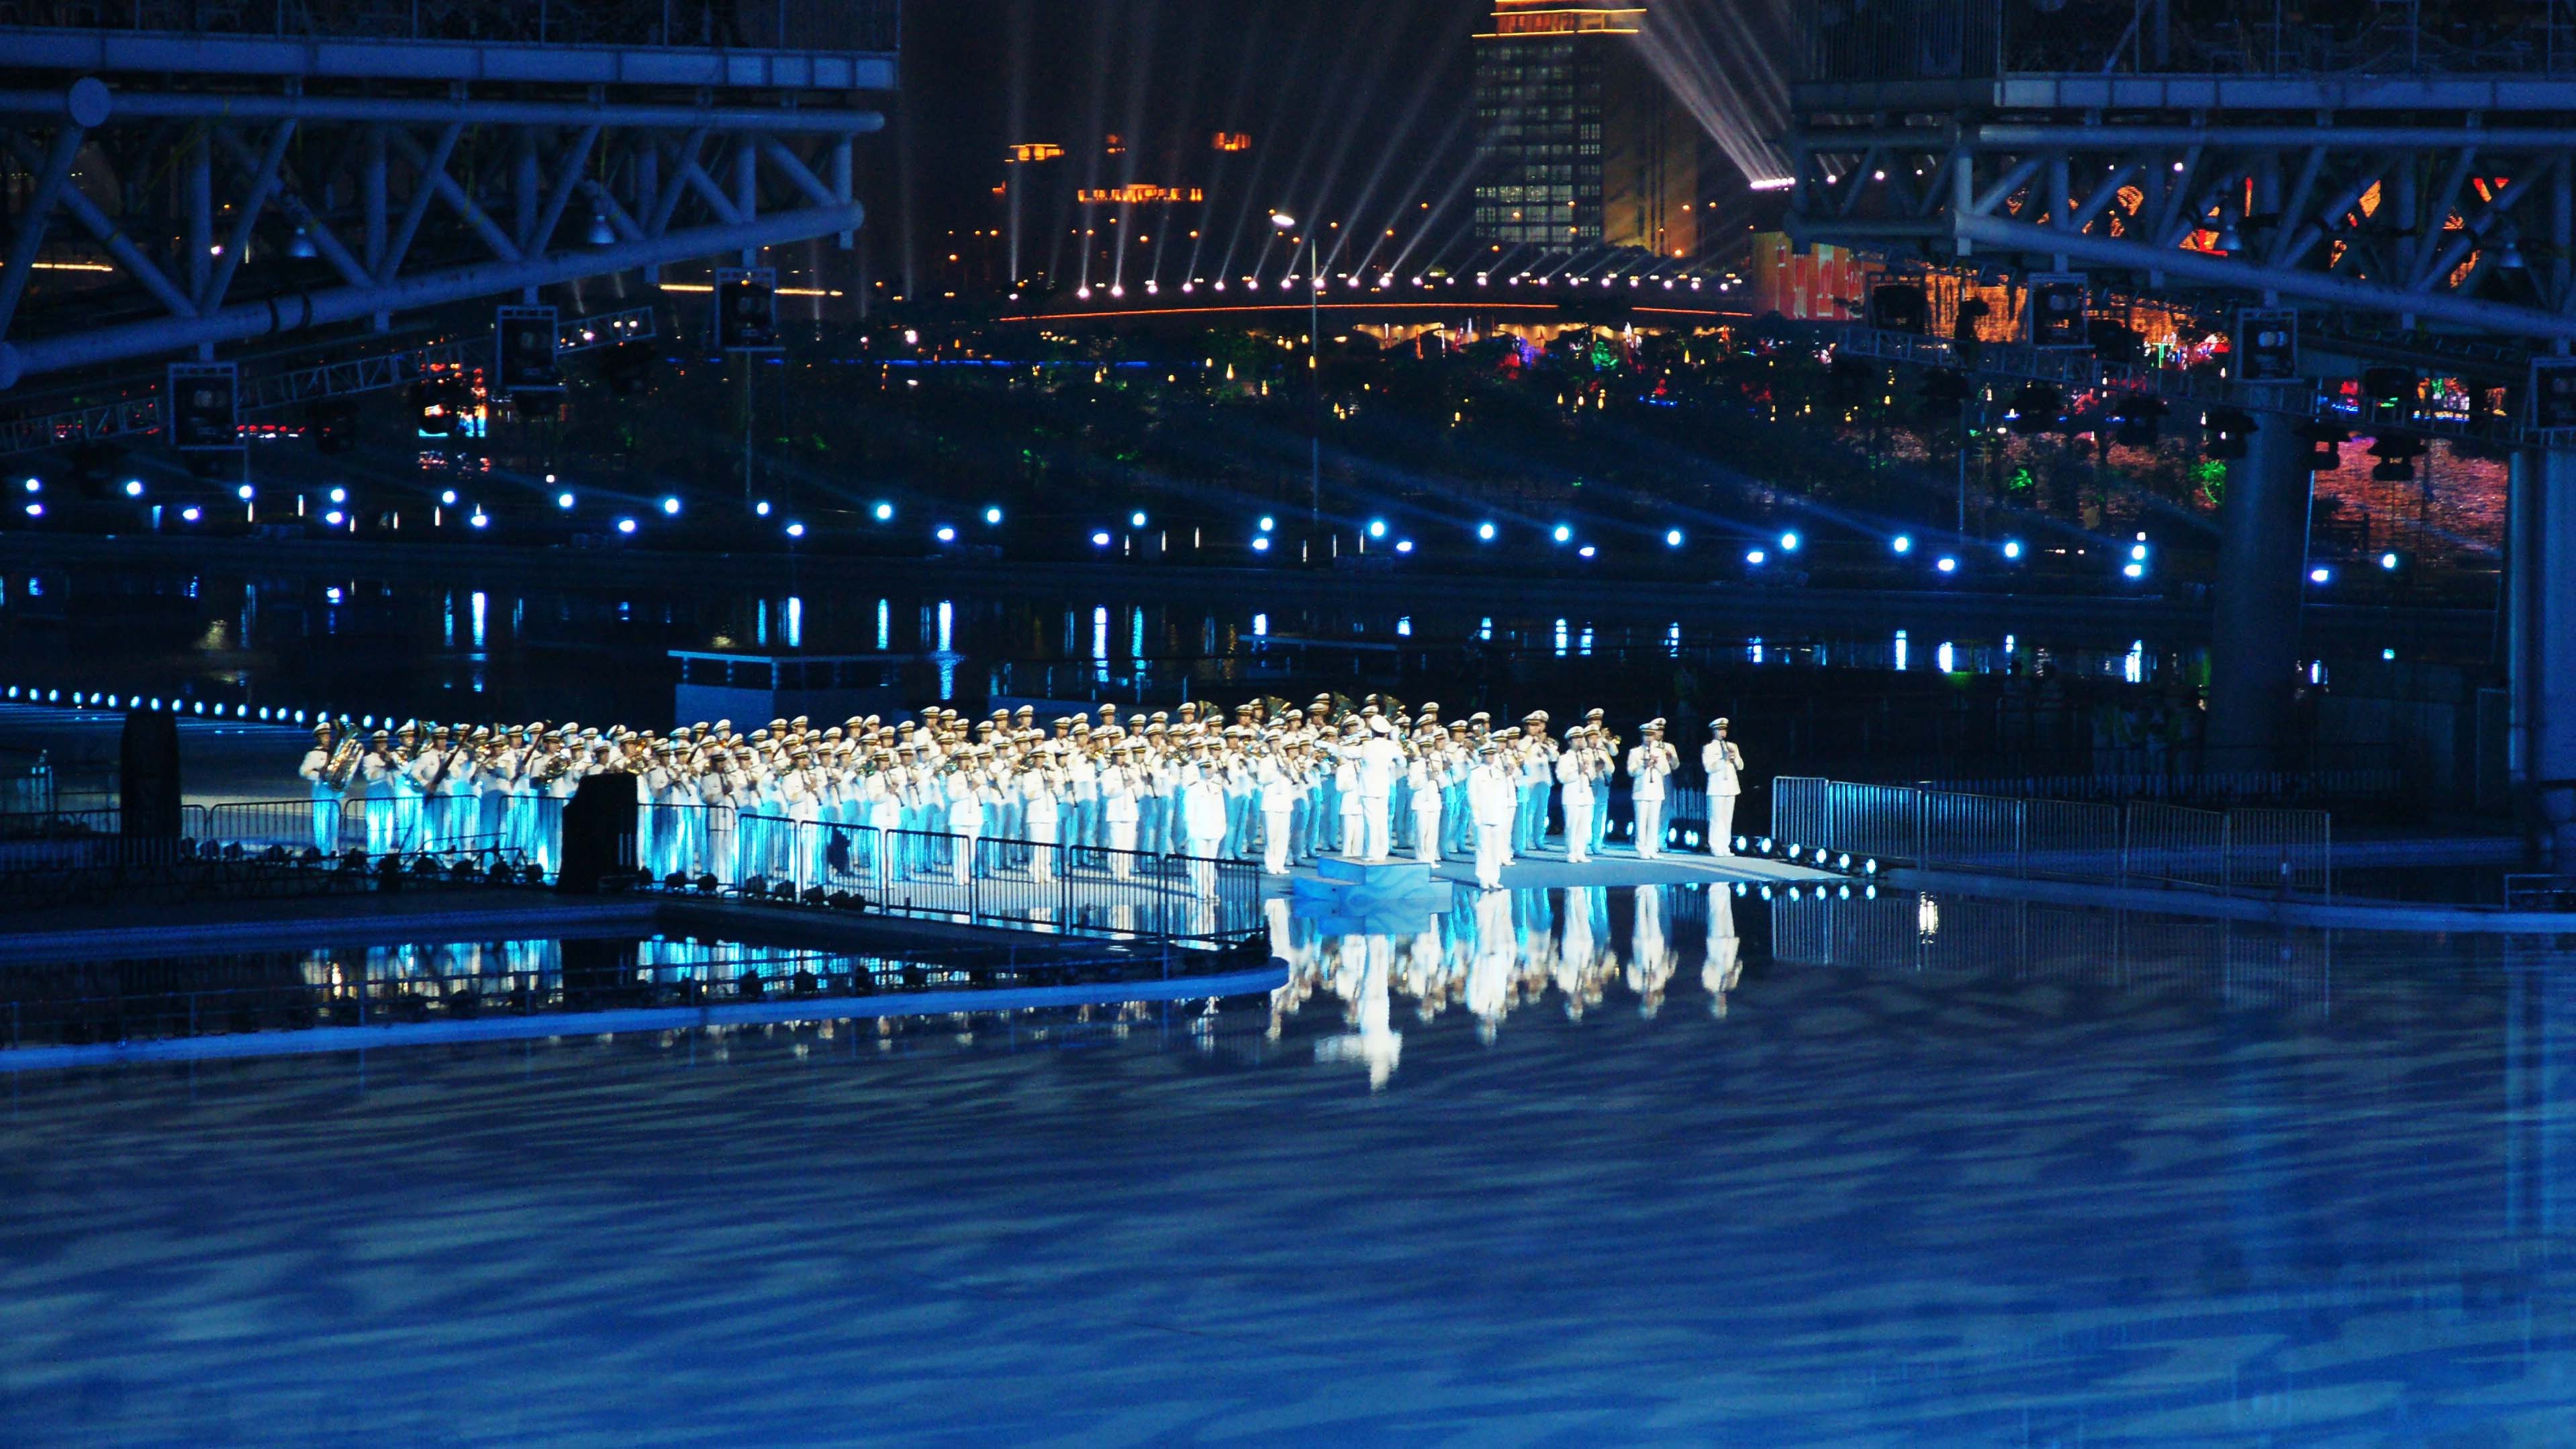 北京2022冬奥会【宣传片】 - 短视频去水印解析